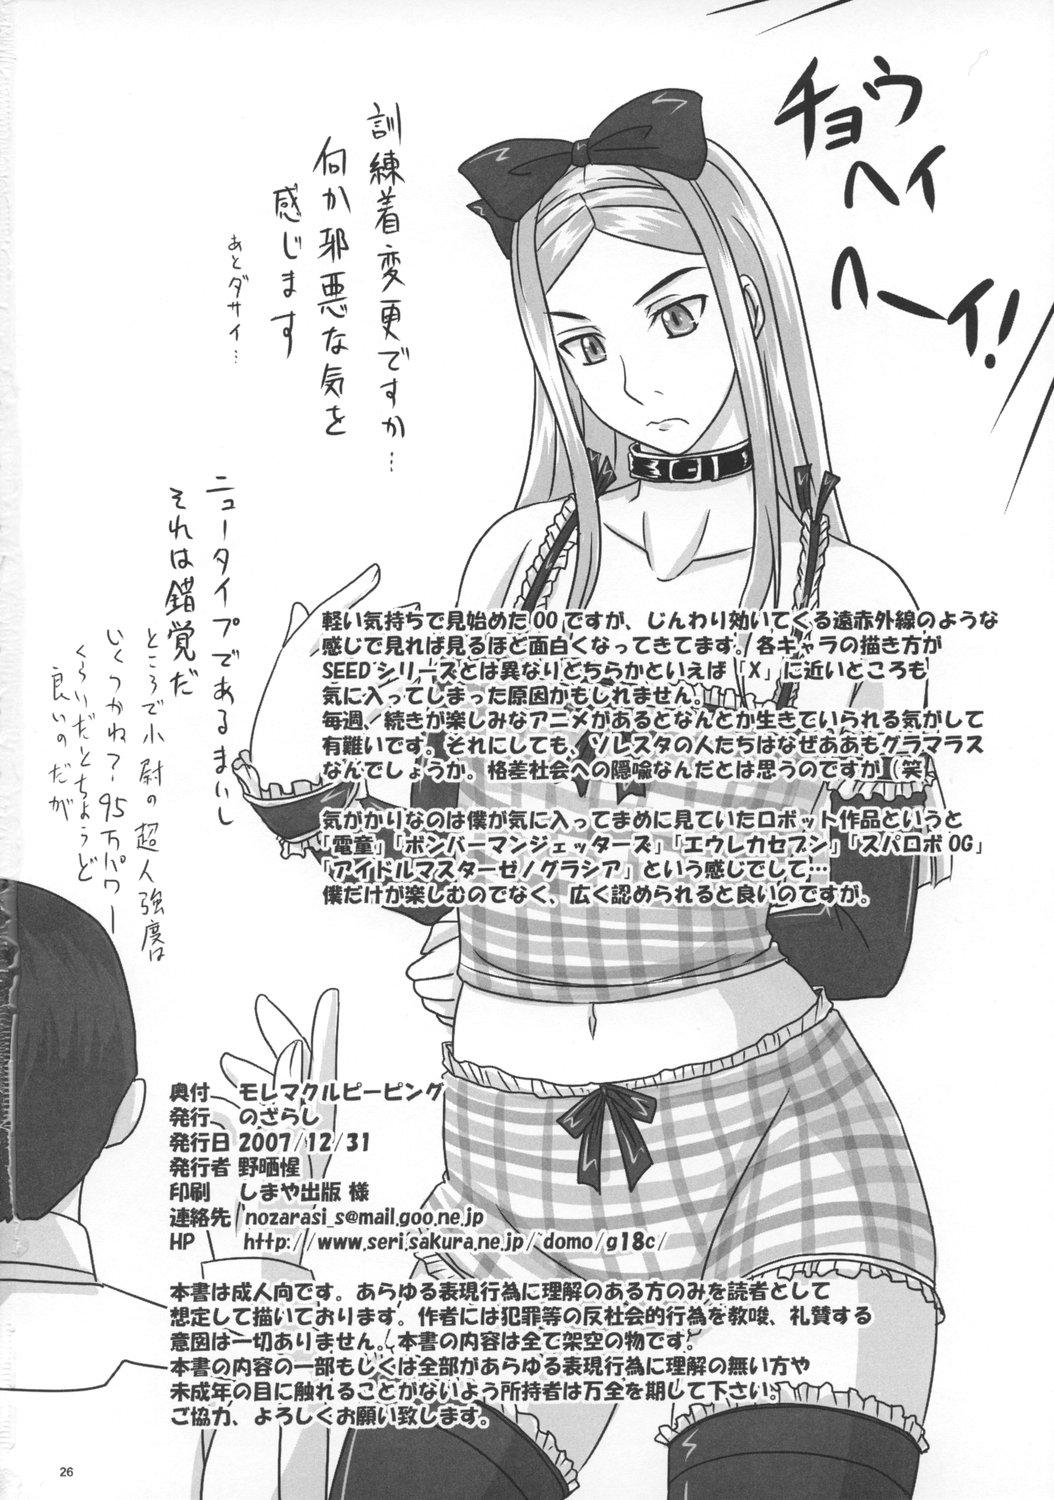 Perra Moremakuru Peeping - Gundam 00 Transsexual - Page 25